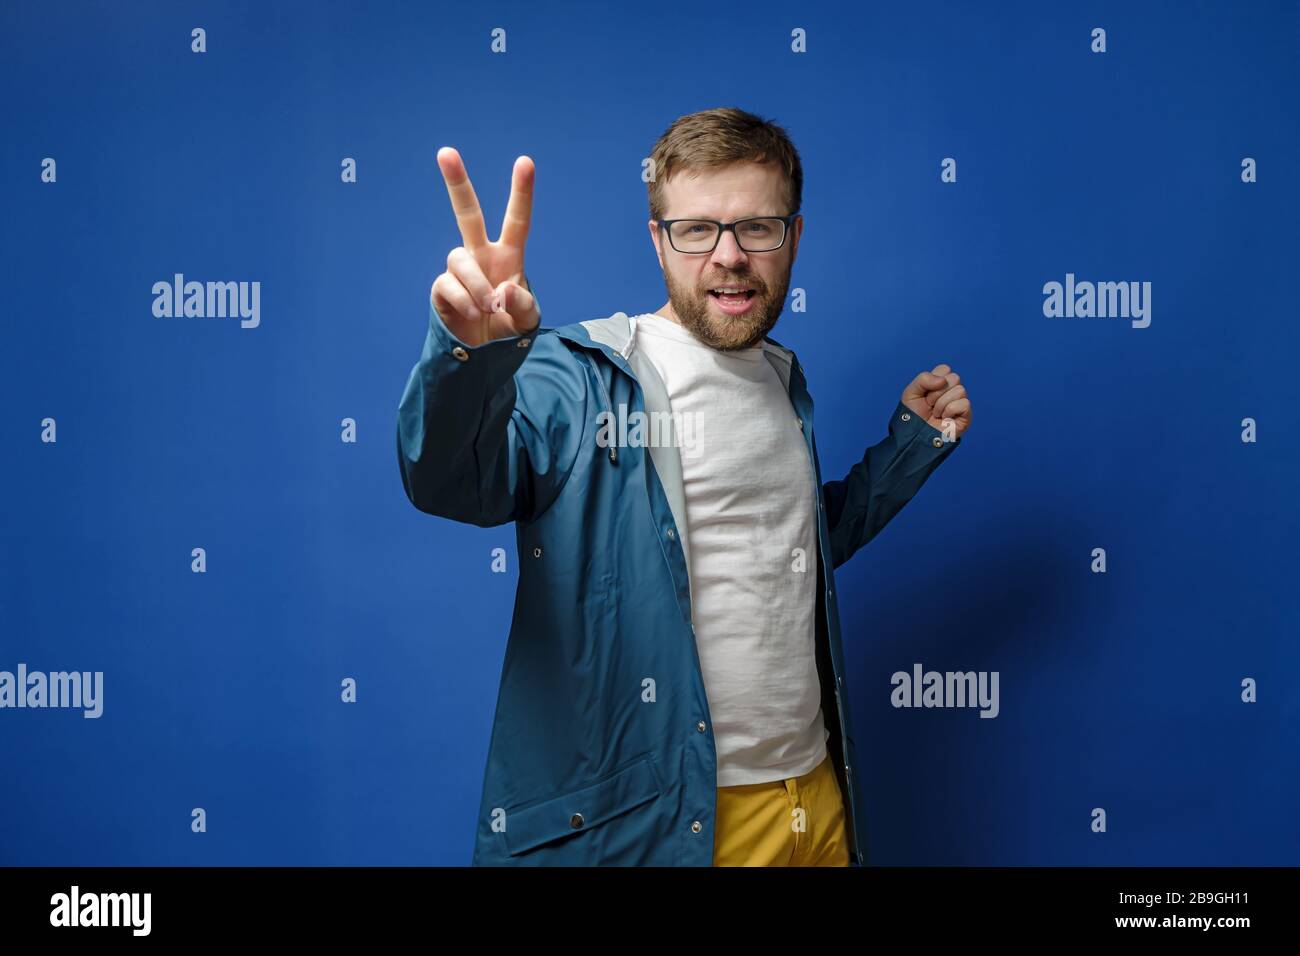 Kaukasischer, bärtiger Mann mit Brille und Regenmantel macht ein V-Zeichen mit Fingern und blickt auf die Kamera, auf blauem Hintergrund. Stockfoto